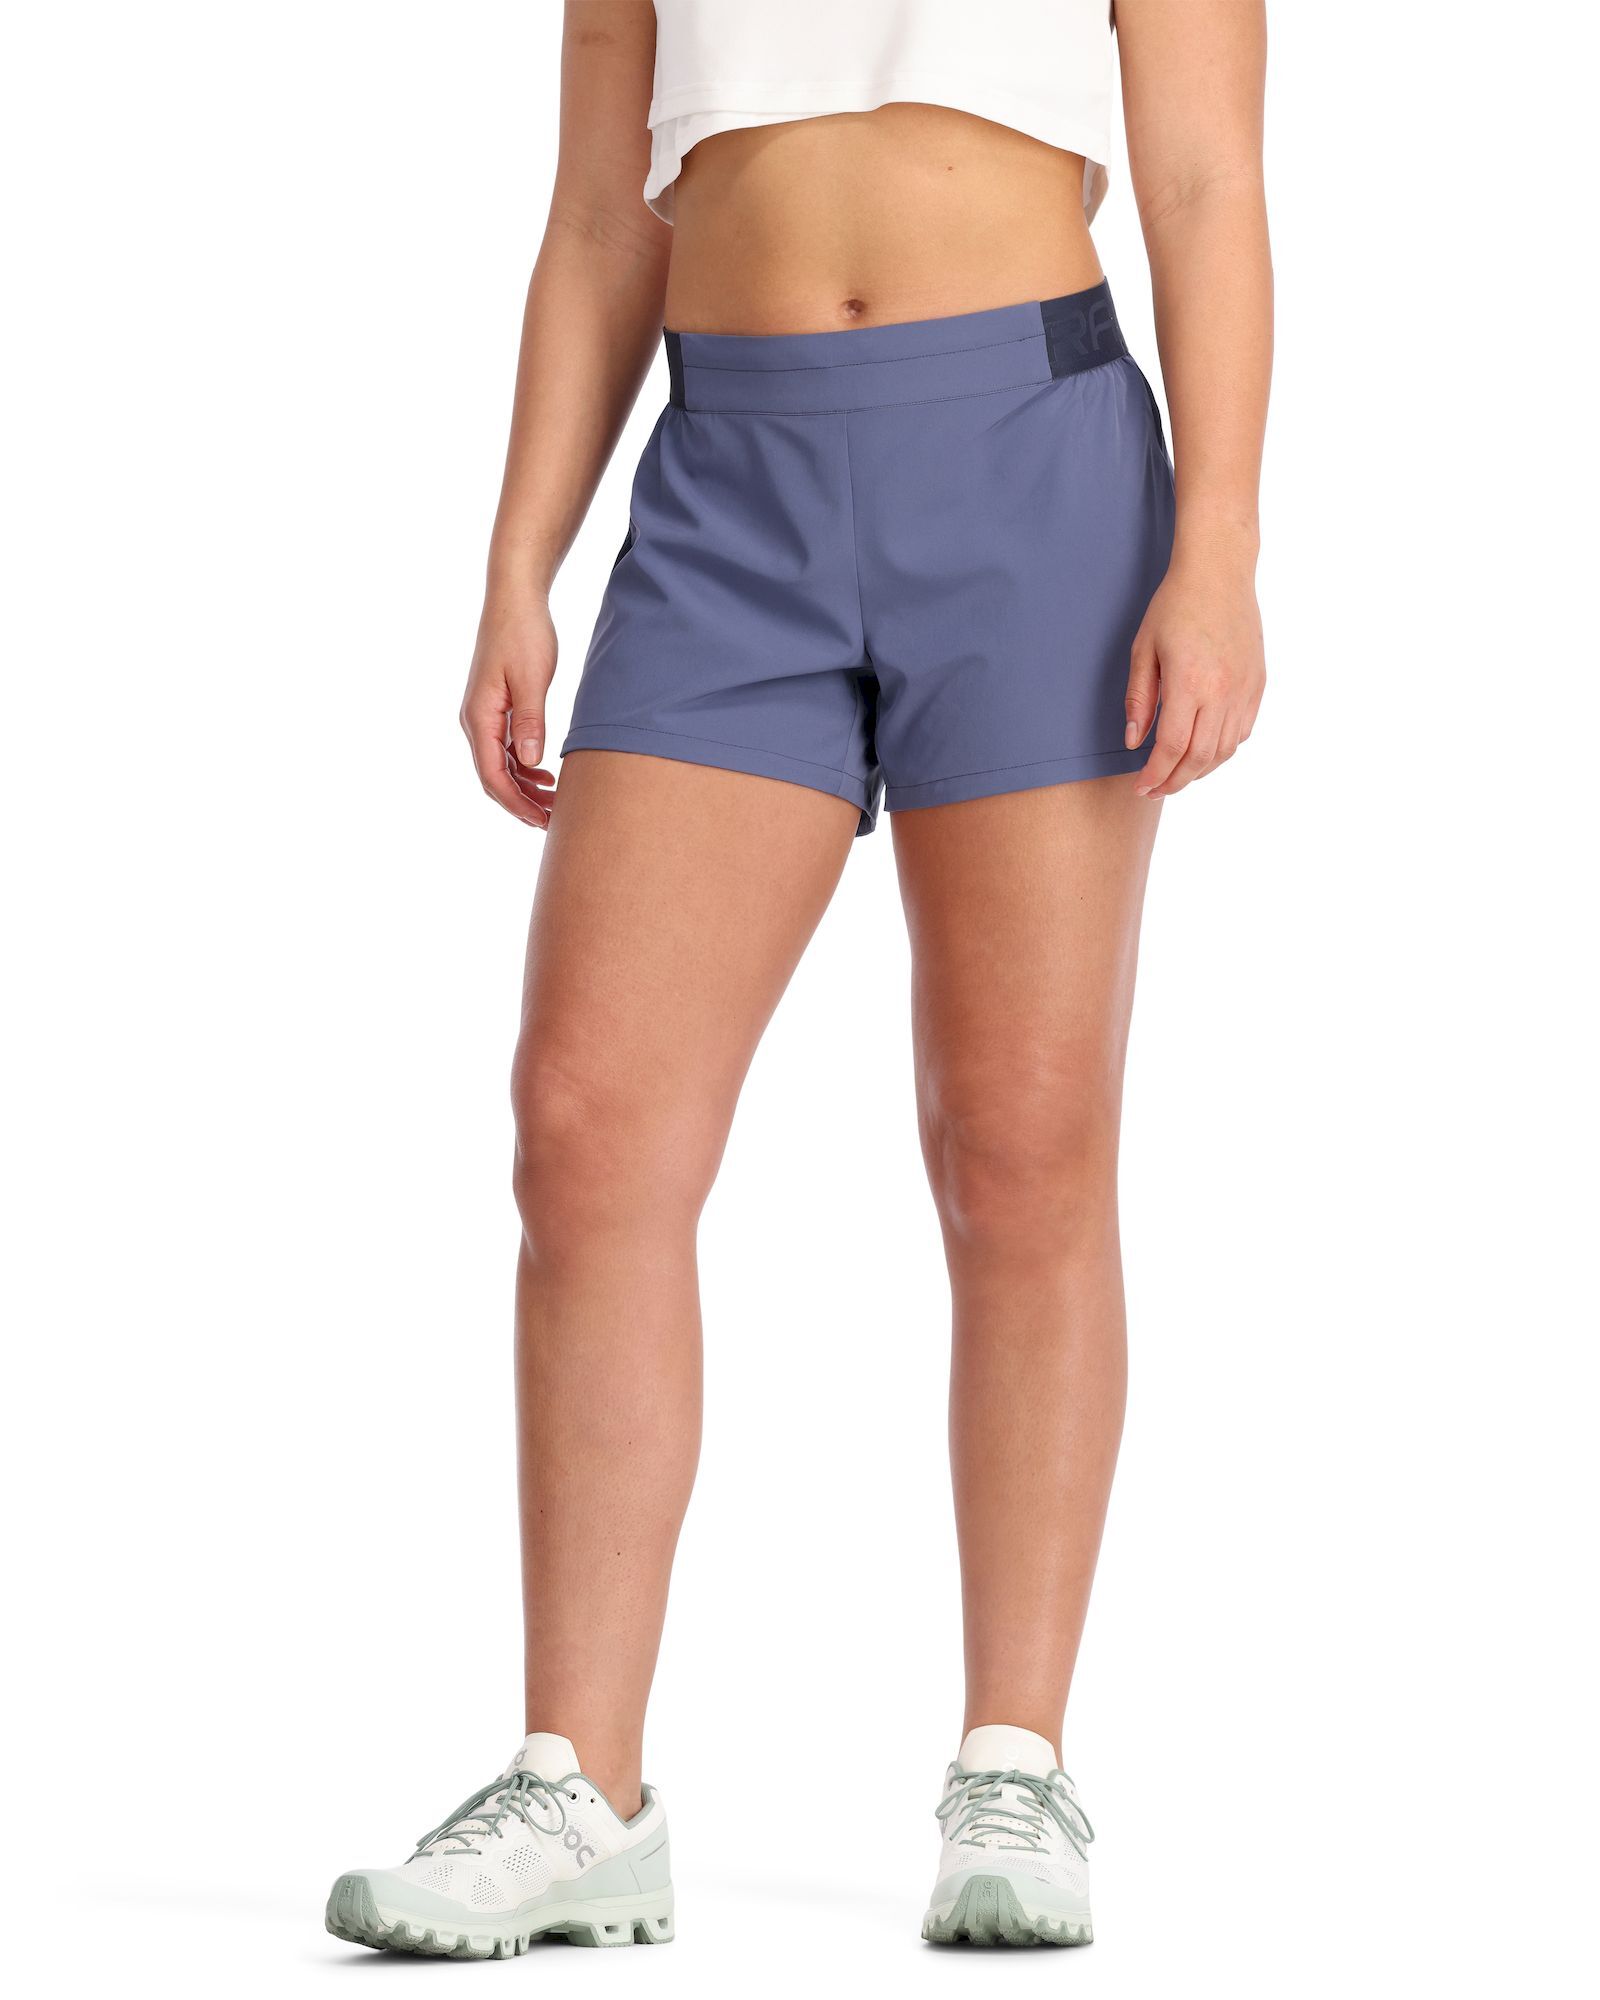 Kari Traa Nora 2.0 Shorts 4 inch - Pantalones cortos de trail running - Mujer | Hardloop